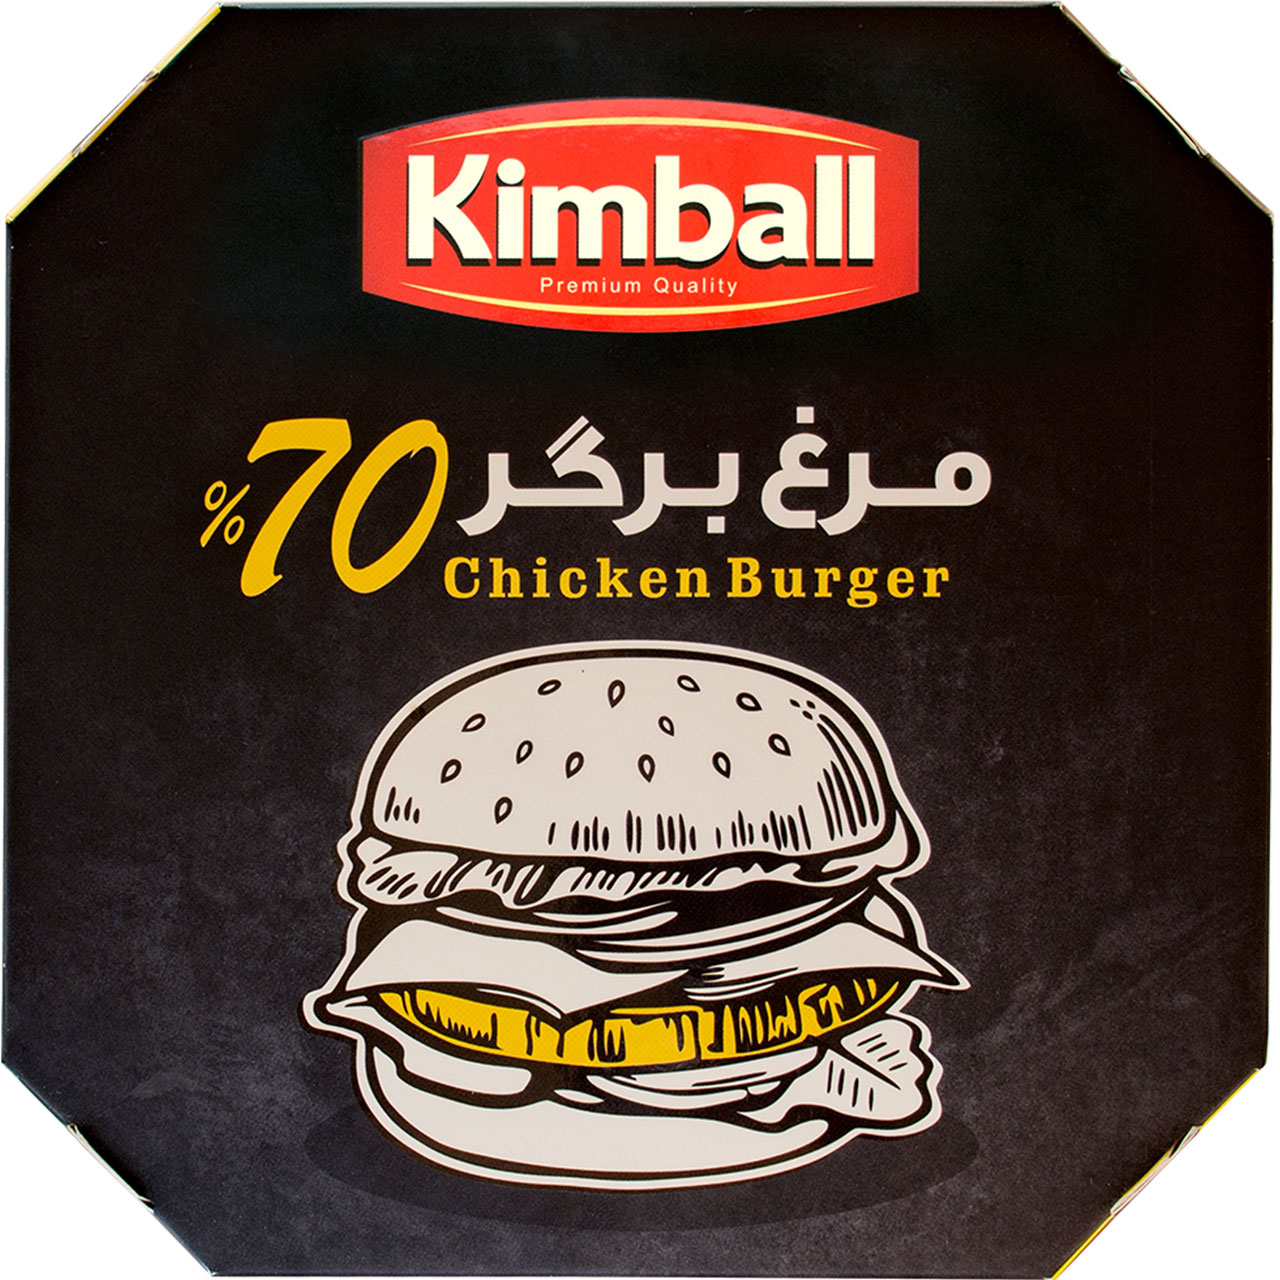 همبرگر 70 درصد گوشت مرغ کیمبال - 500 گرم